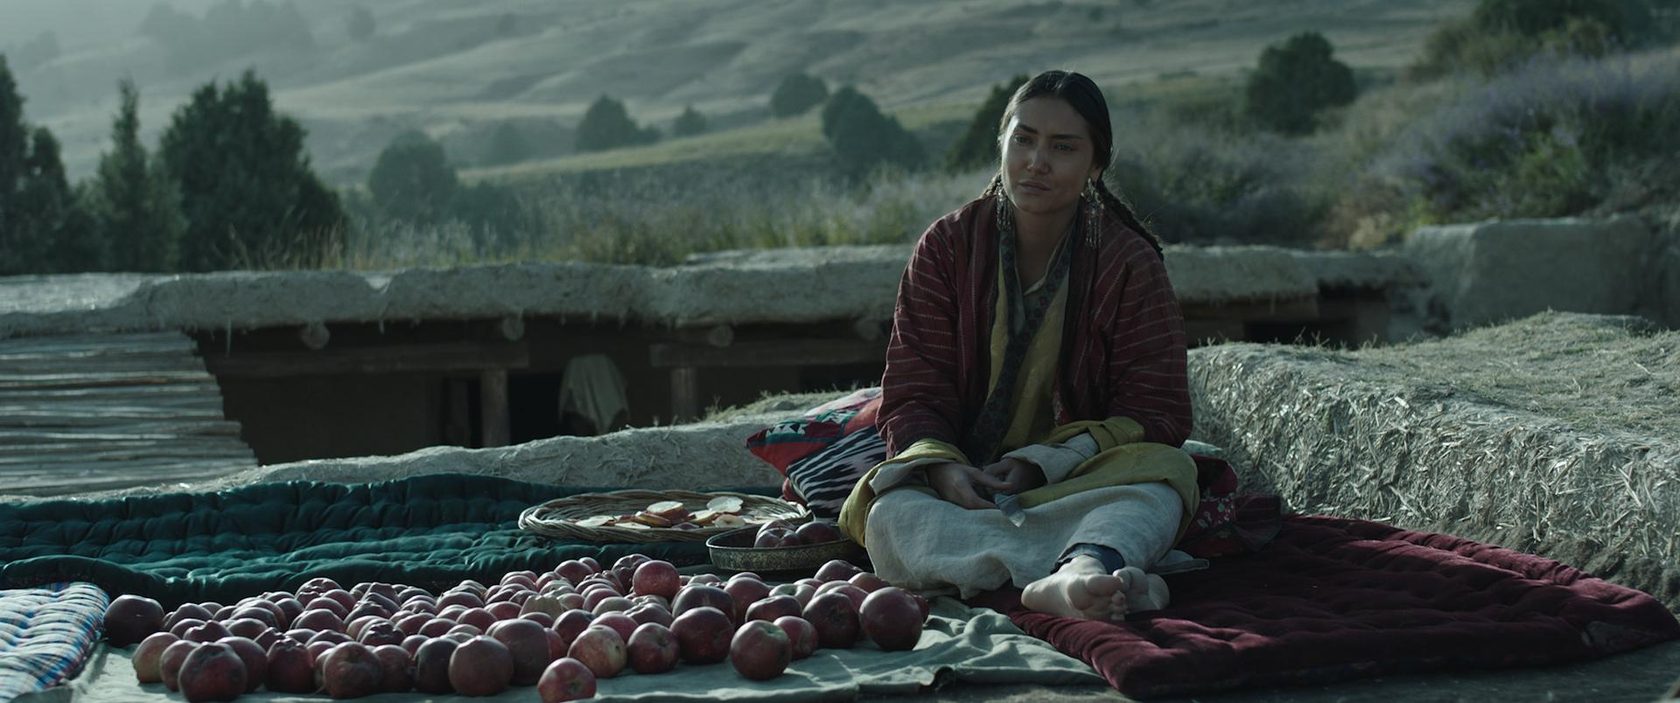 Узбекский фильм будет претендовать на премию «Оскар»